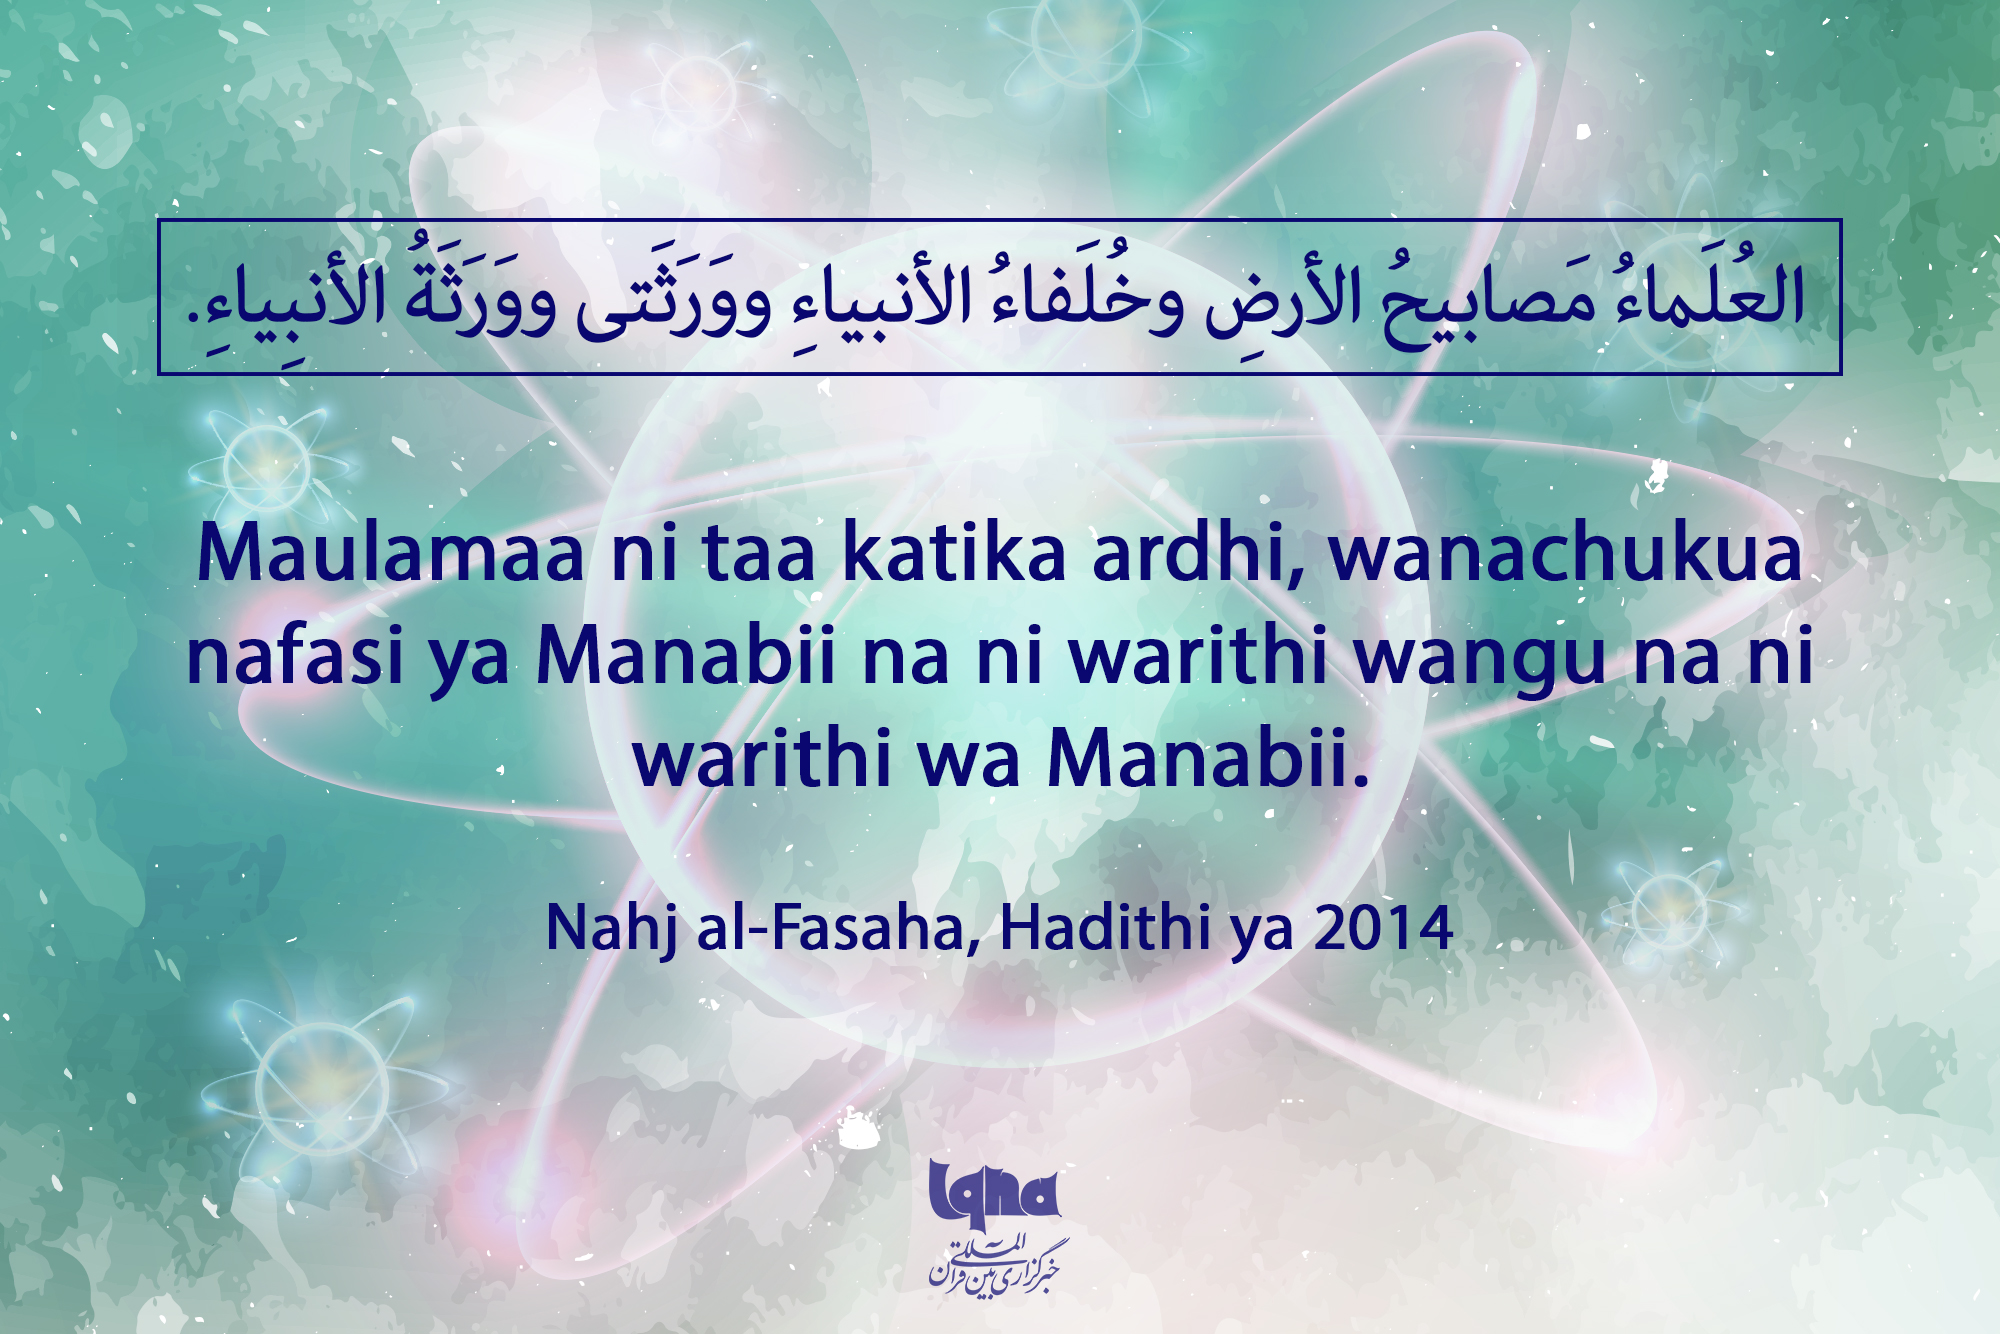 Maulamaa ni taa katika ardhi, wanachukua nafasi ya Manabii na ni warithi wangu na ni warithi wa Manabii.